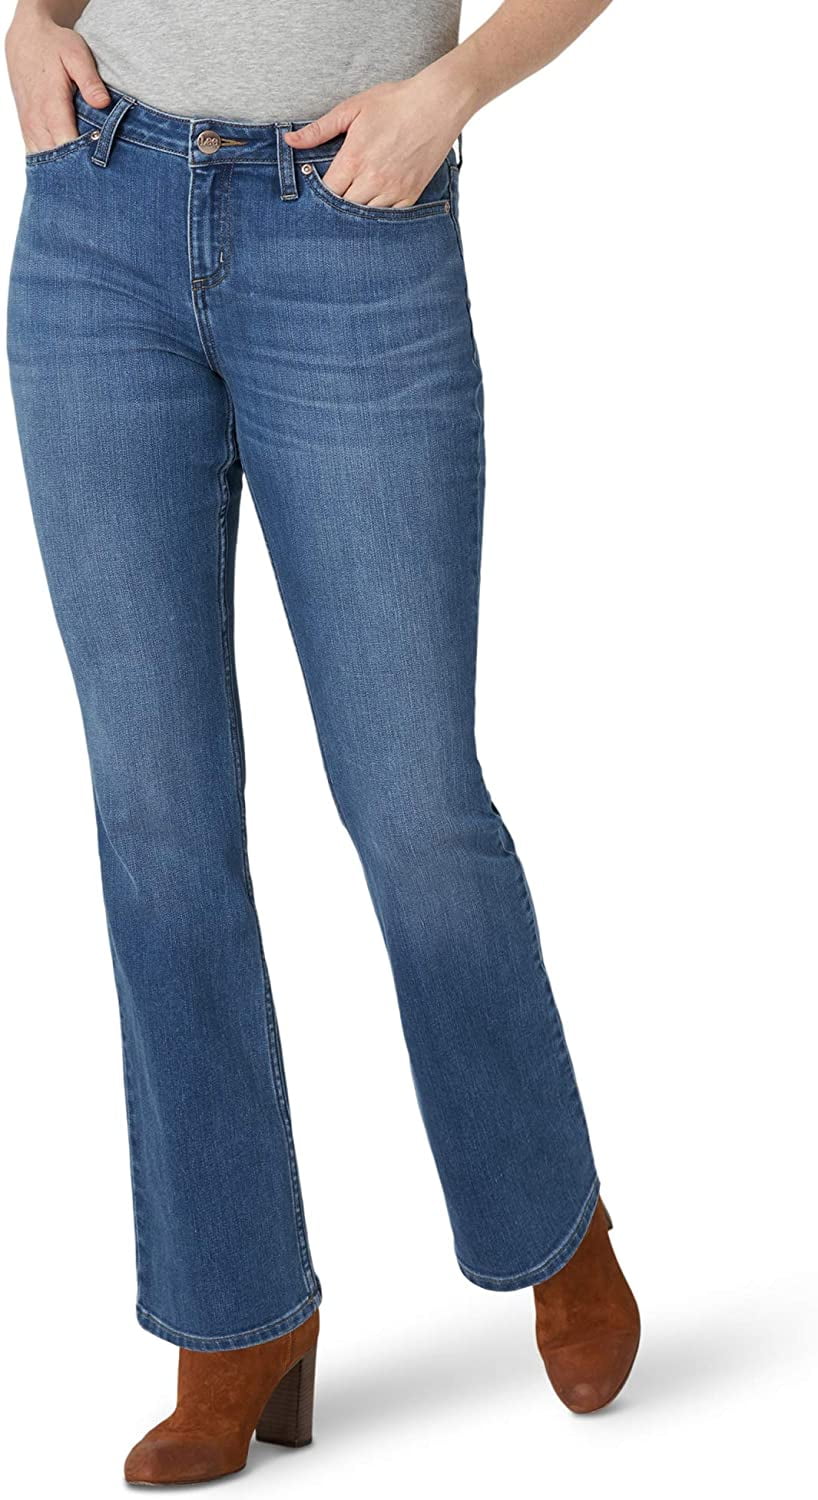 Erklärung Belastung Muster lee classic fit womens jeans Buchhaltung ...